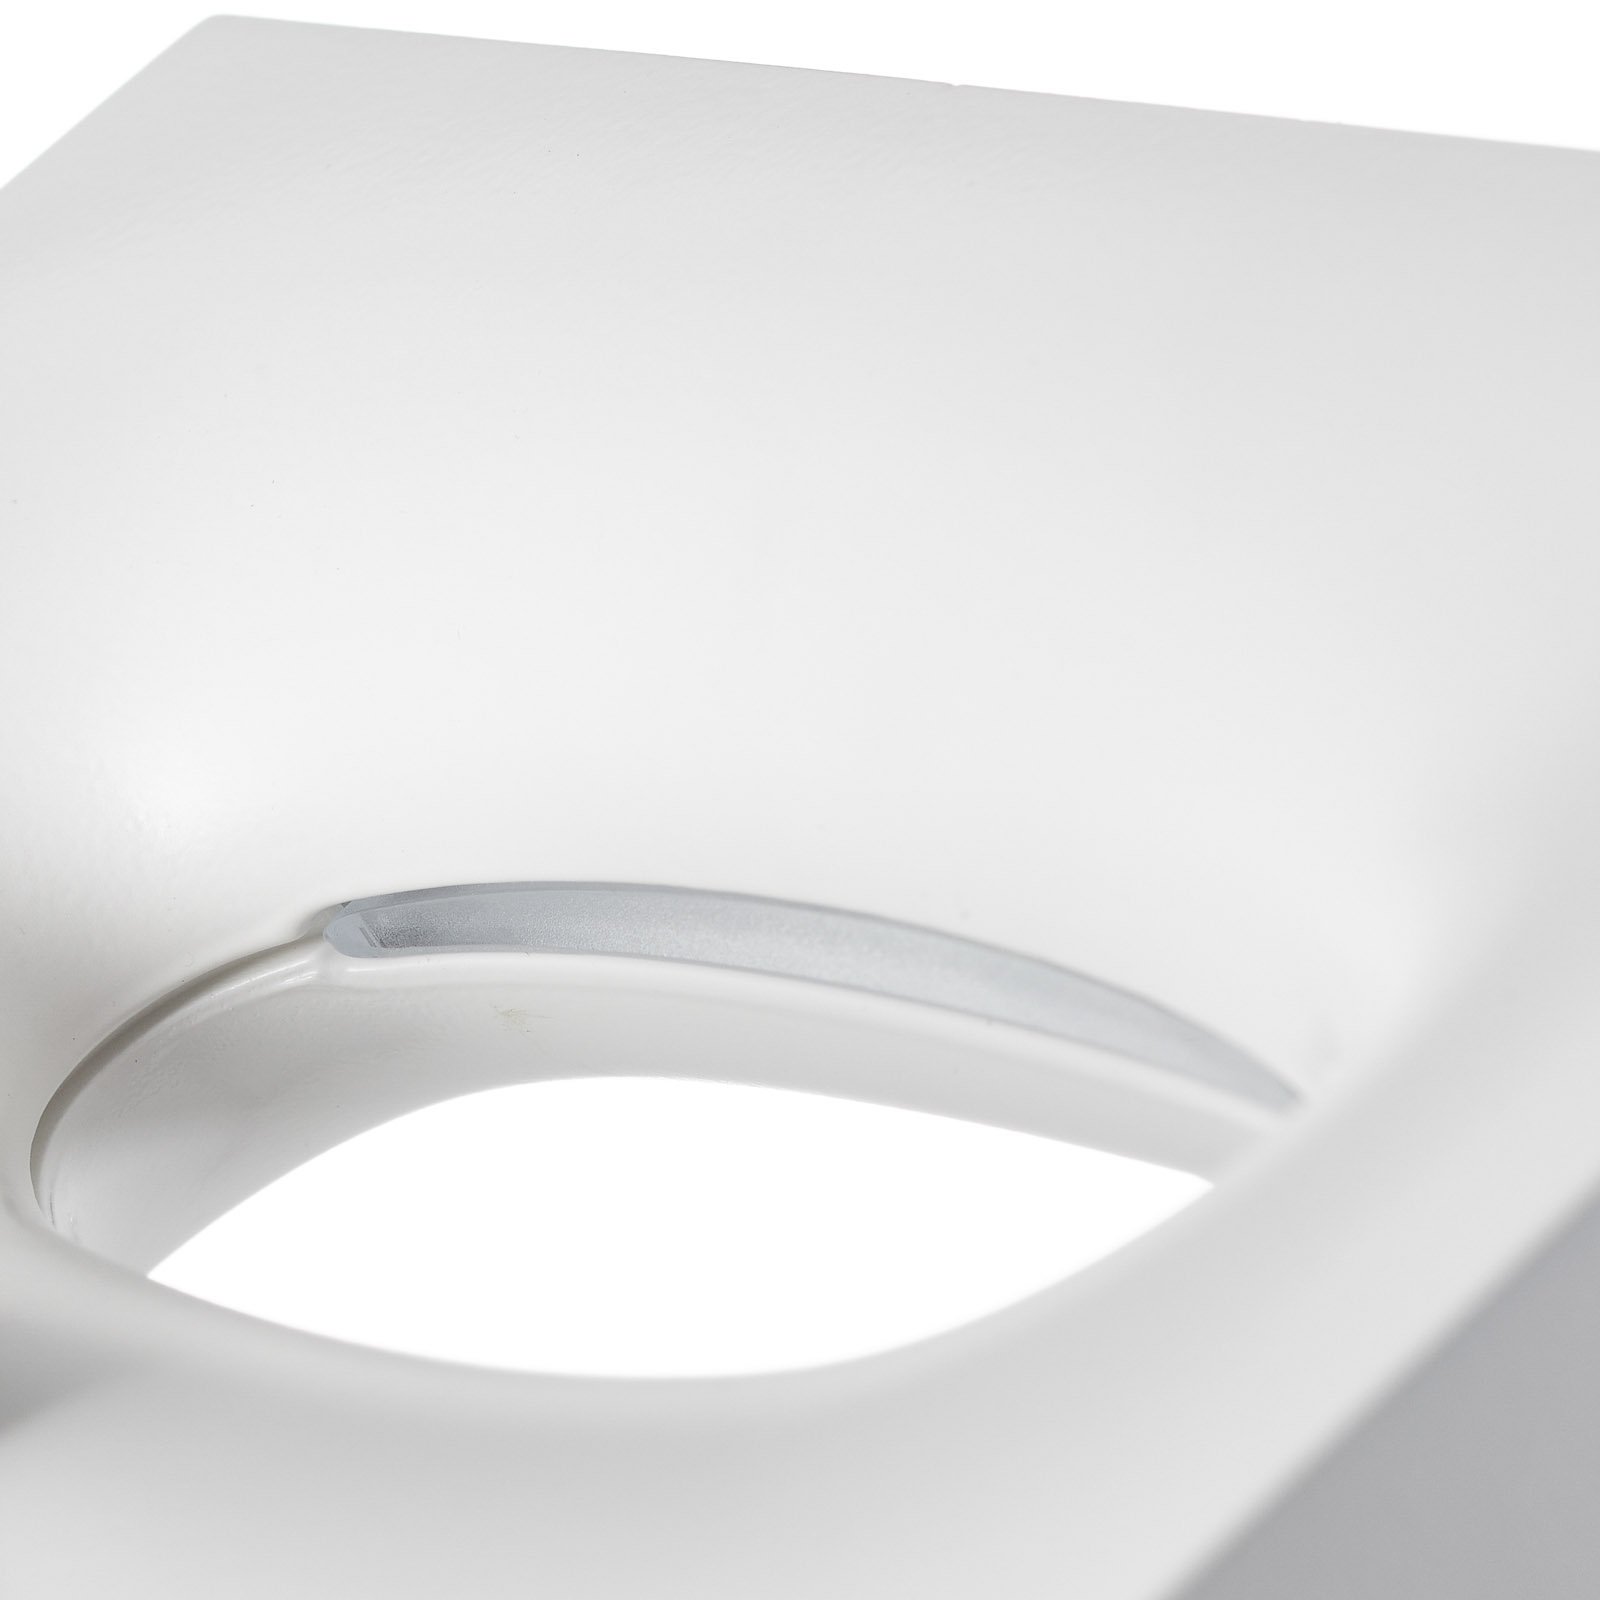 Melete white LED wall light, 2,700 K